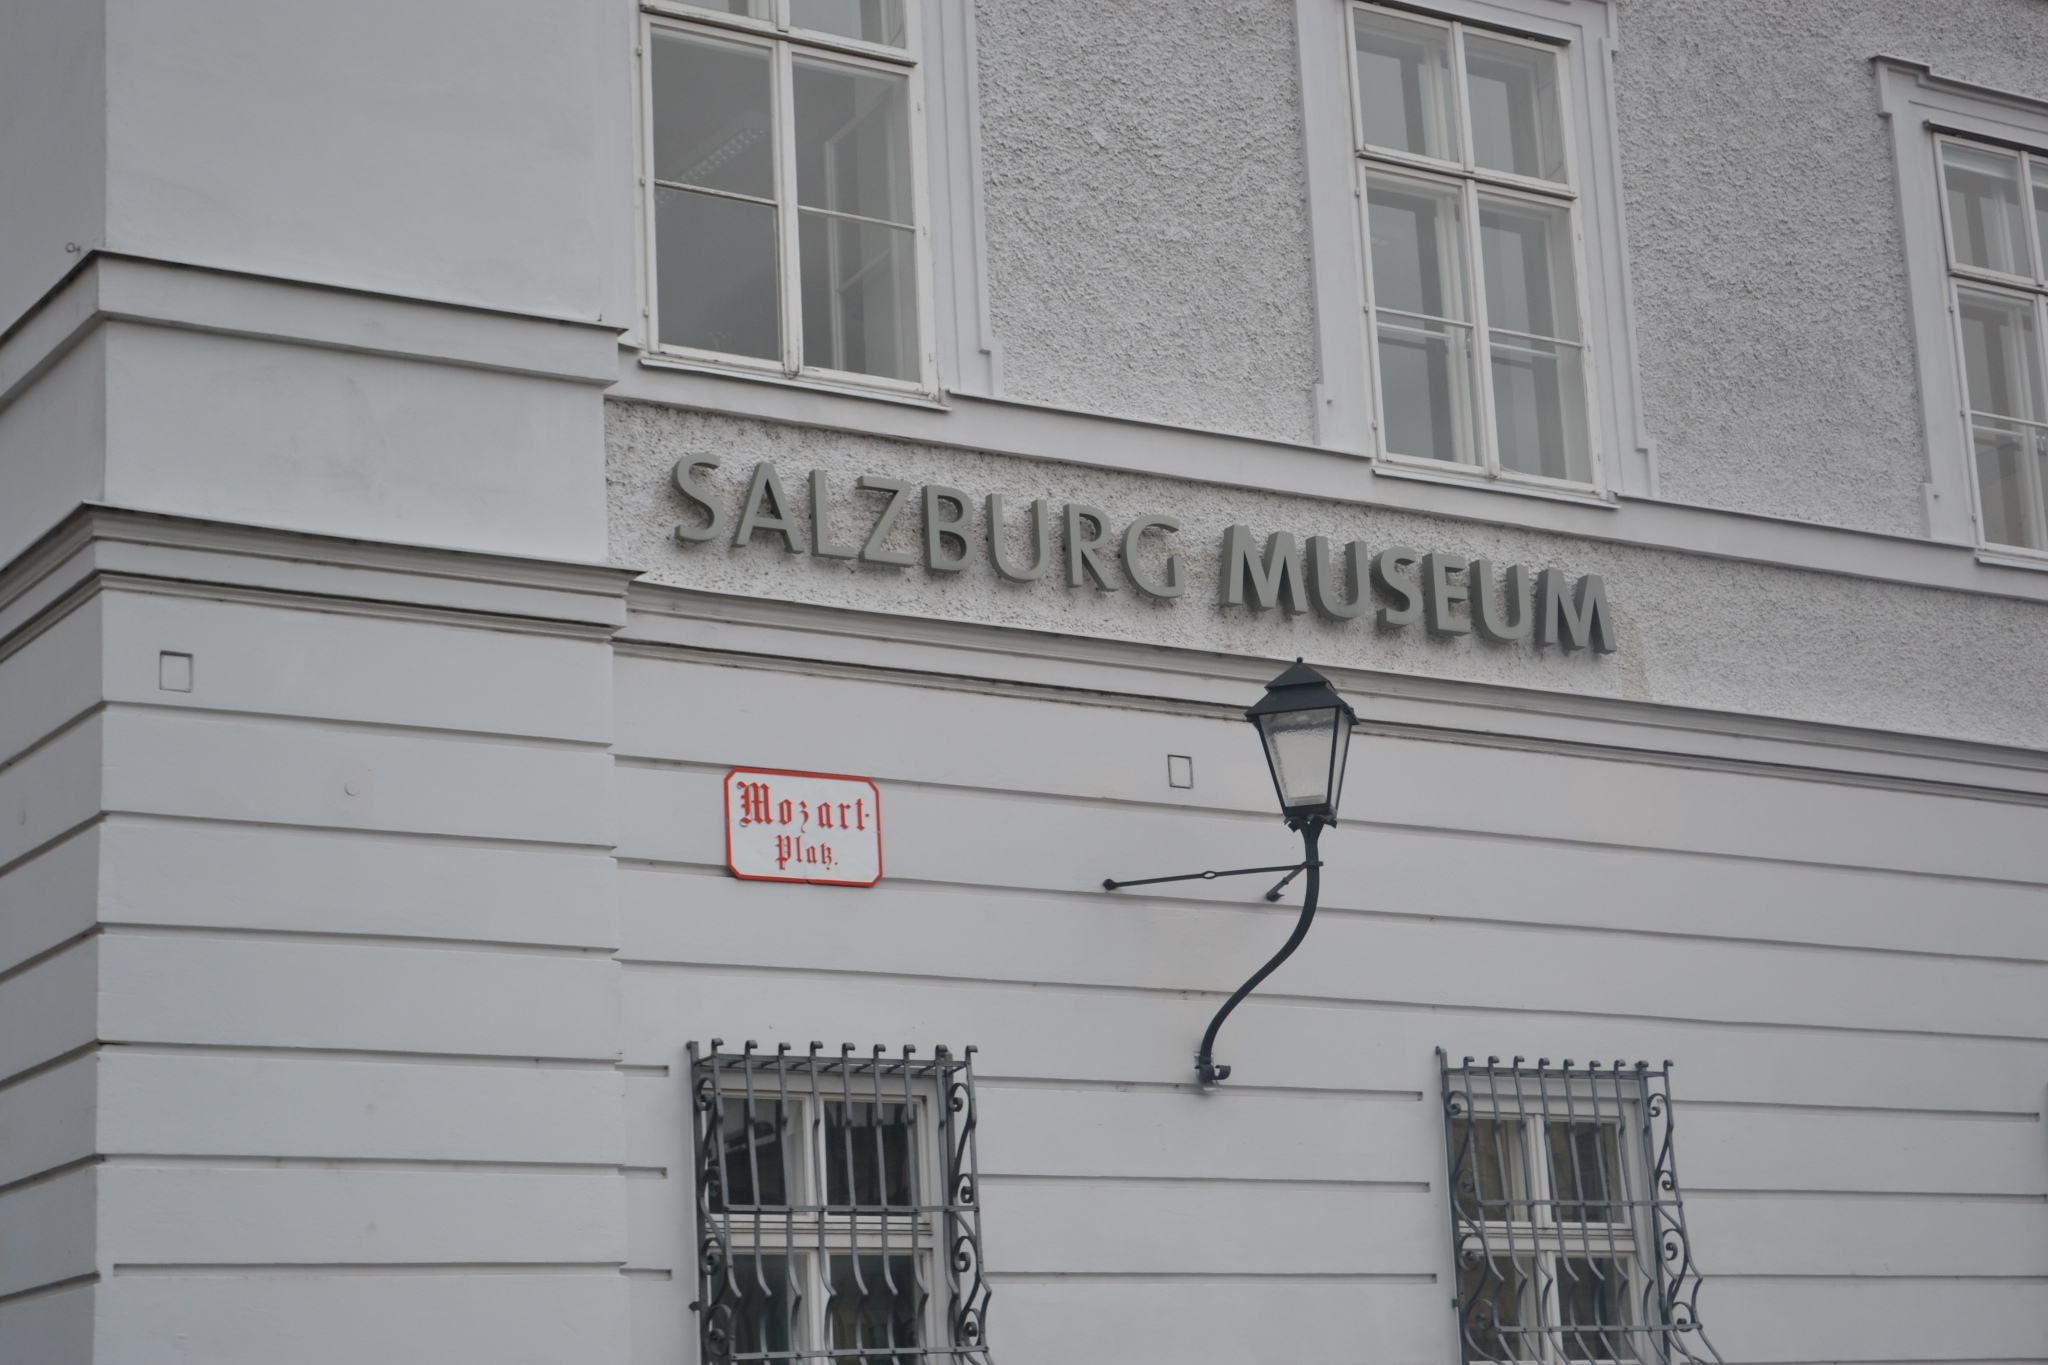 薩爾斯堡博物館